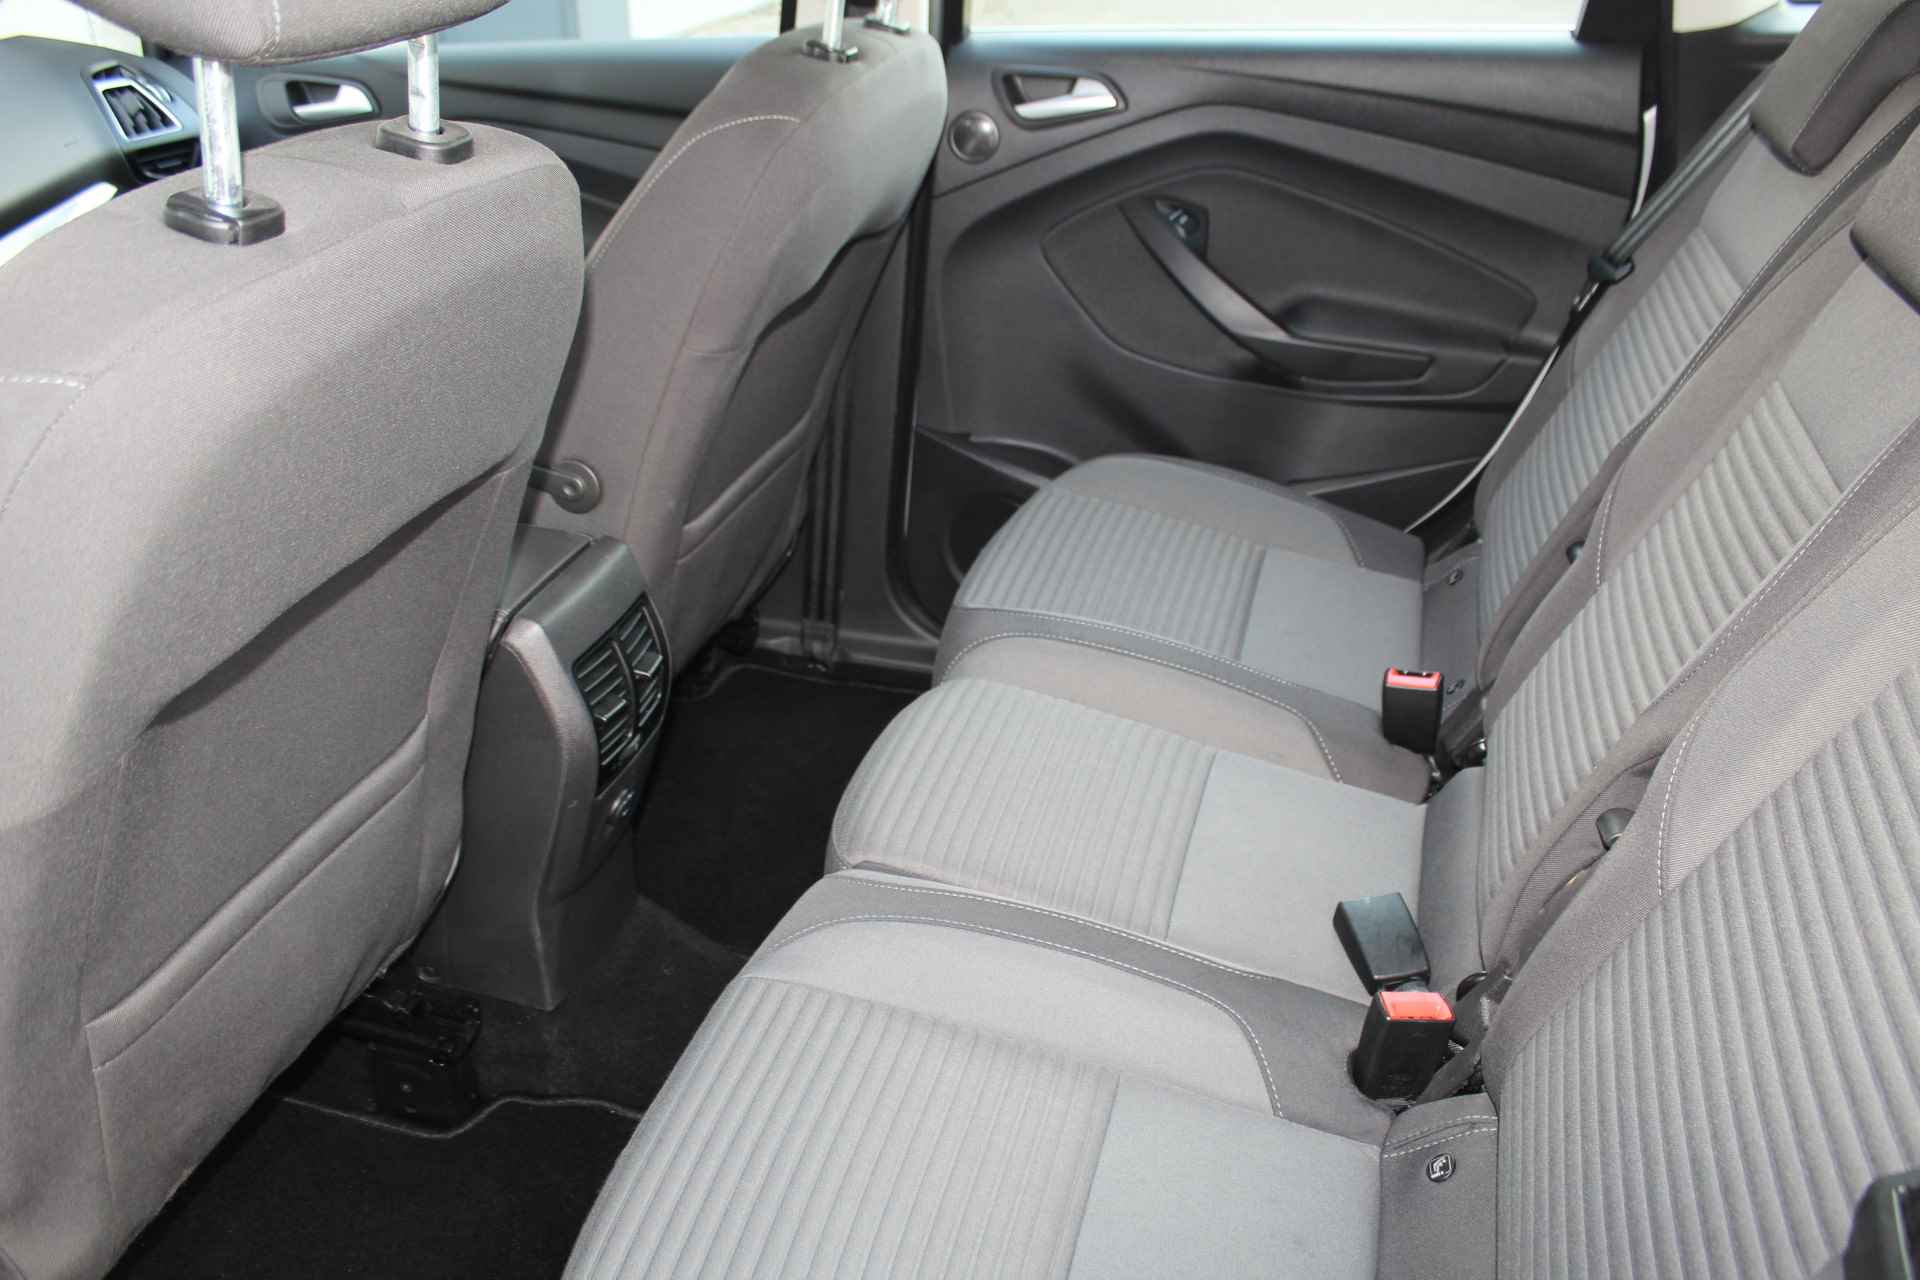 Ford C-MAX 1.0-125pk Titanium. Uiterst nette wagen, hoge/comfortabele in- en uitstap. Volautm. airco dual, cruise cntrl, trekhaak, metallic lak, parkeersensoren v+a etc.LM wielen, multi functioneel stuurwiel, verwarmd voorraam, inklapbare spiegels etc. - 36/43